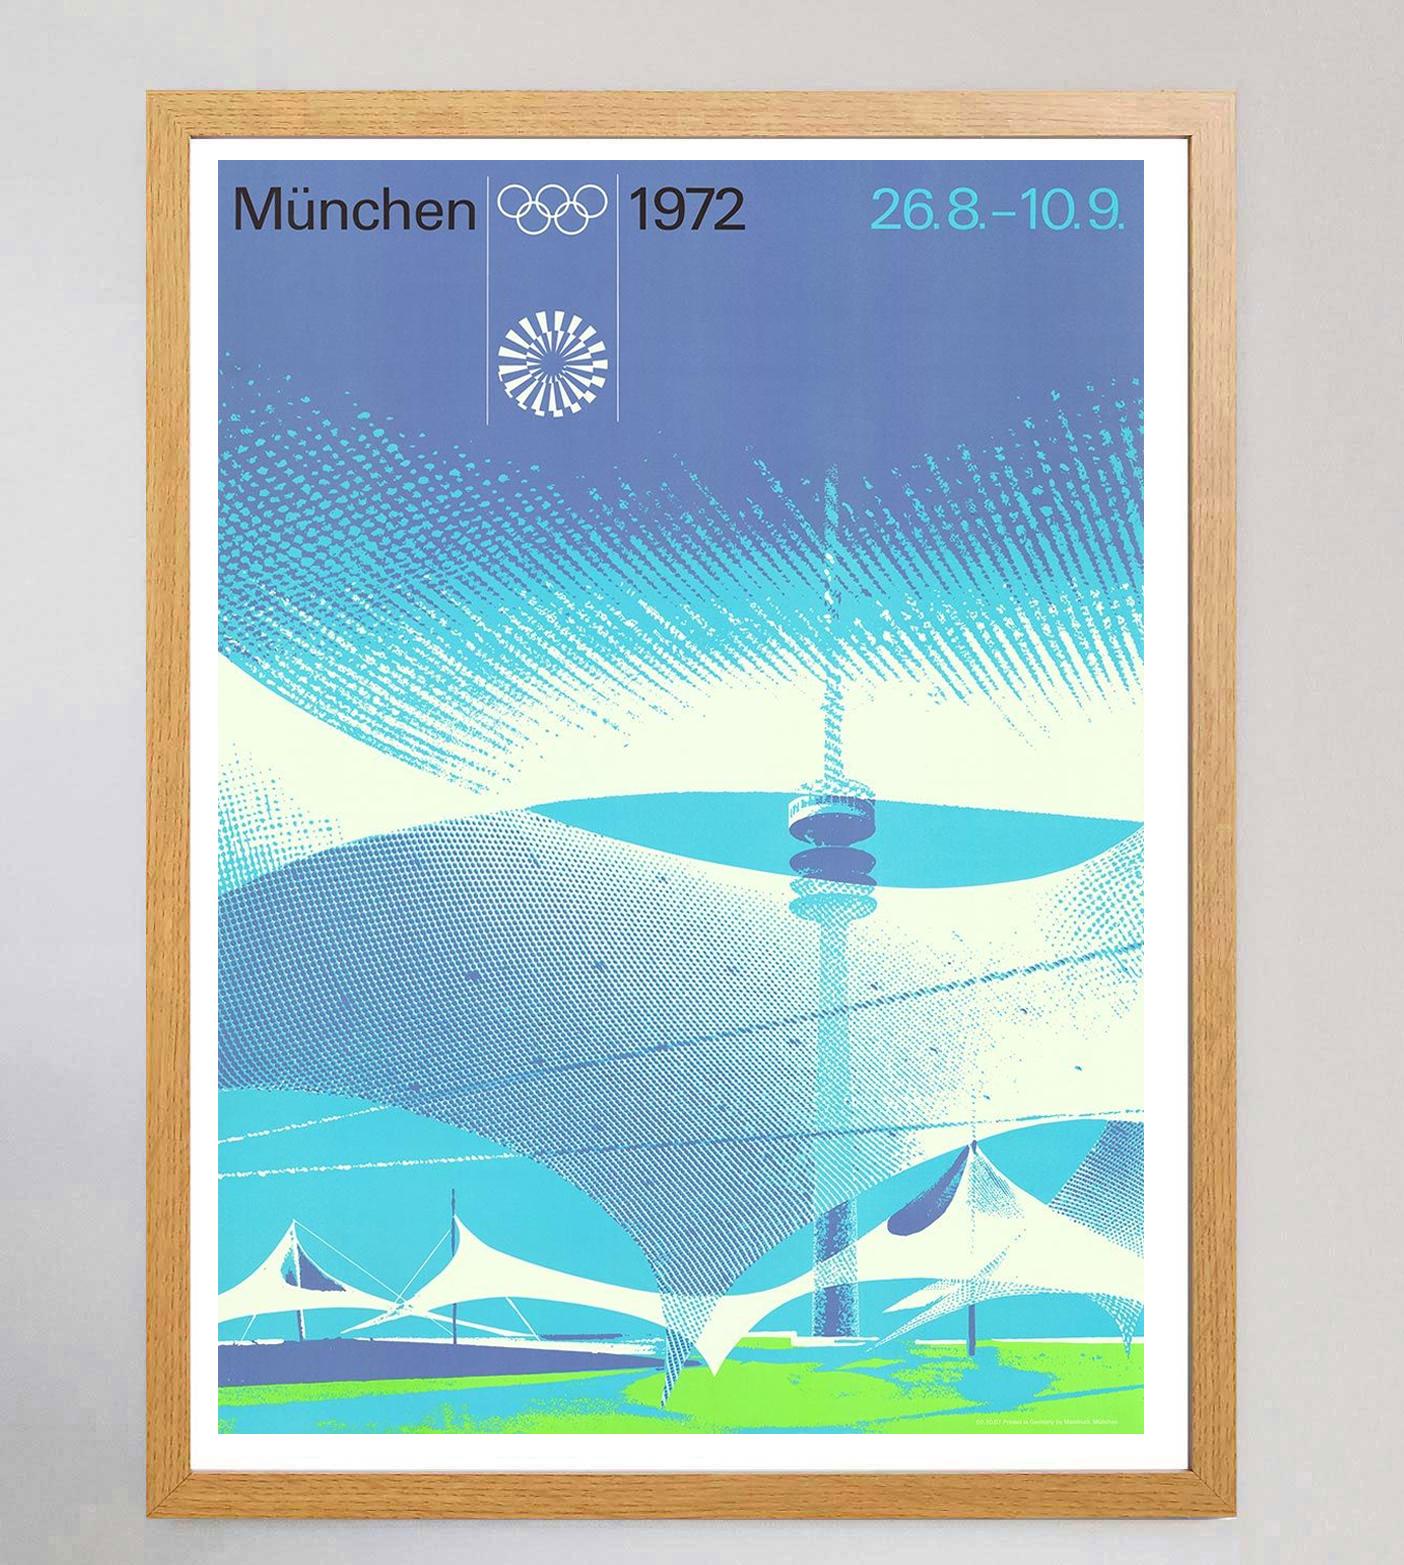 Le graphiste allemand Design/One a dirigé l'équipe chargée de la conception des Jeux olympiques de Munich en 1972. Il a notamment conçu cette magnifique affiche représentant le stade olympique. Ces Jeux étaient les deuxièmes organisés en Allemagne